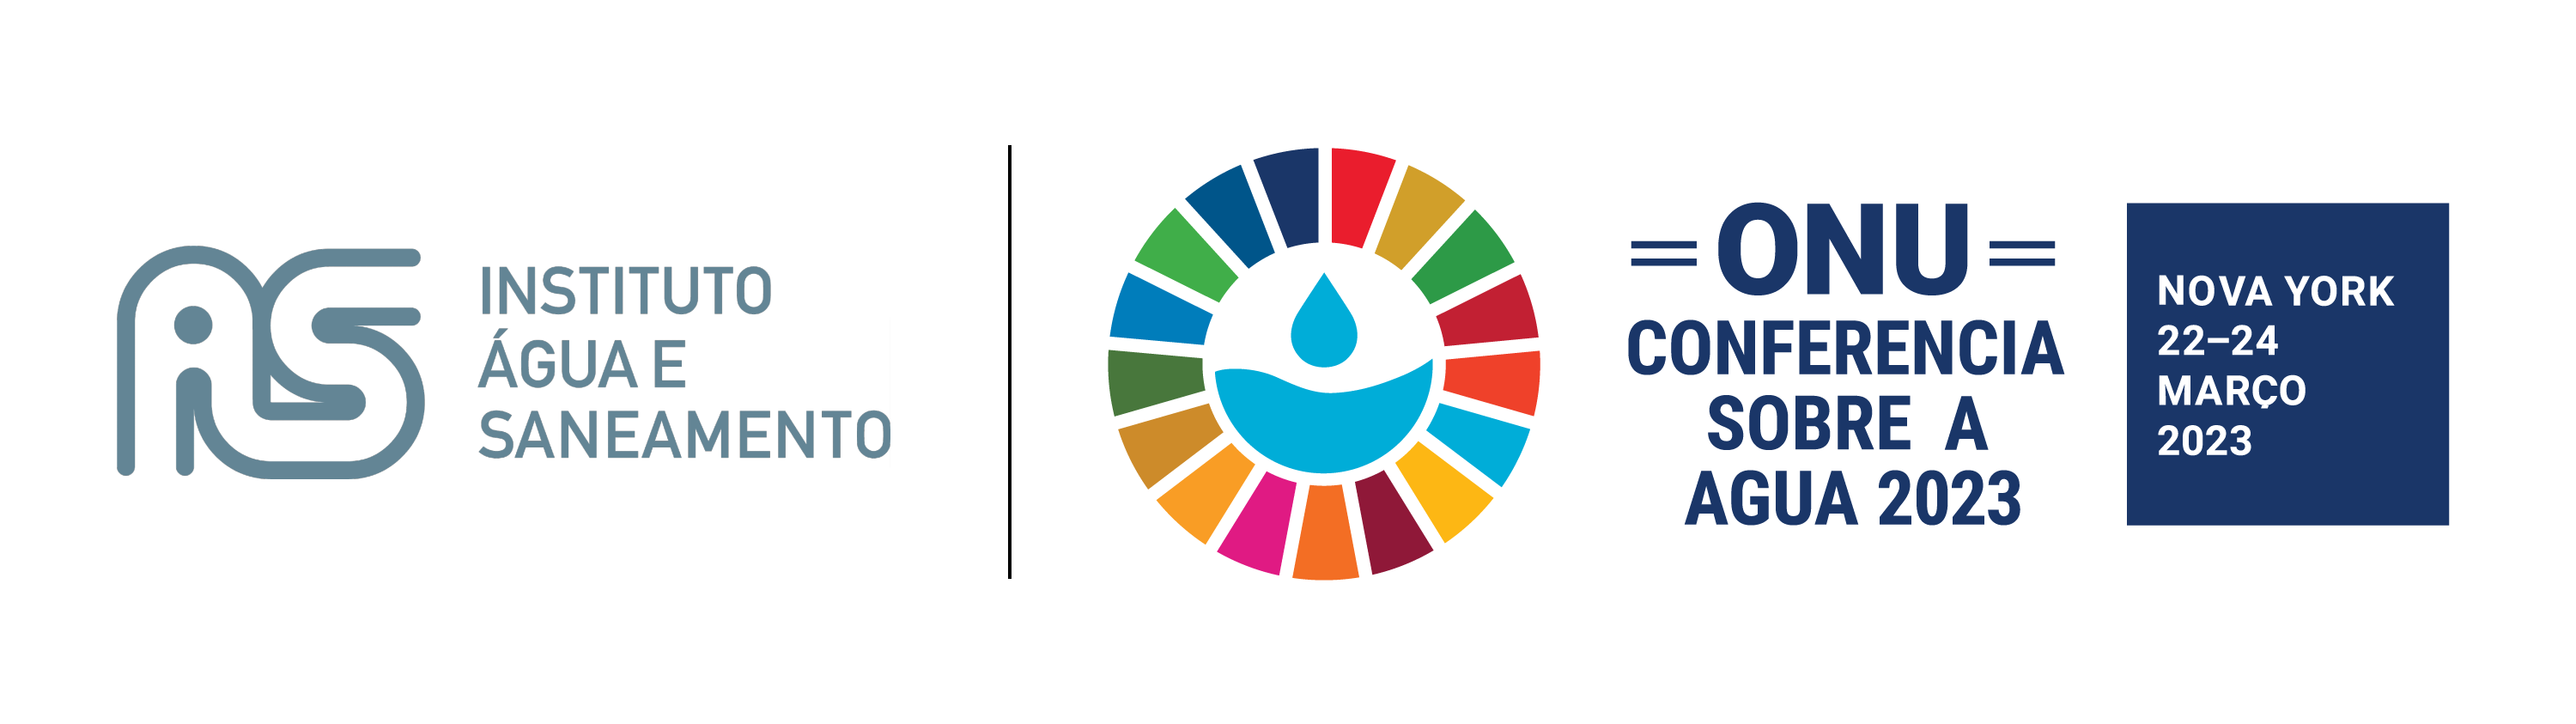 Logo do Instituto Água e Saneamento ao lado do logo da Conferência sobre a água da ONU